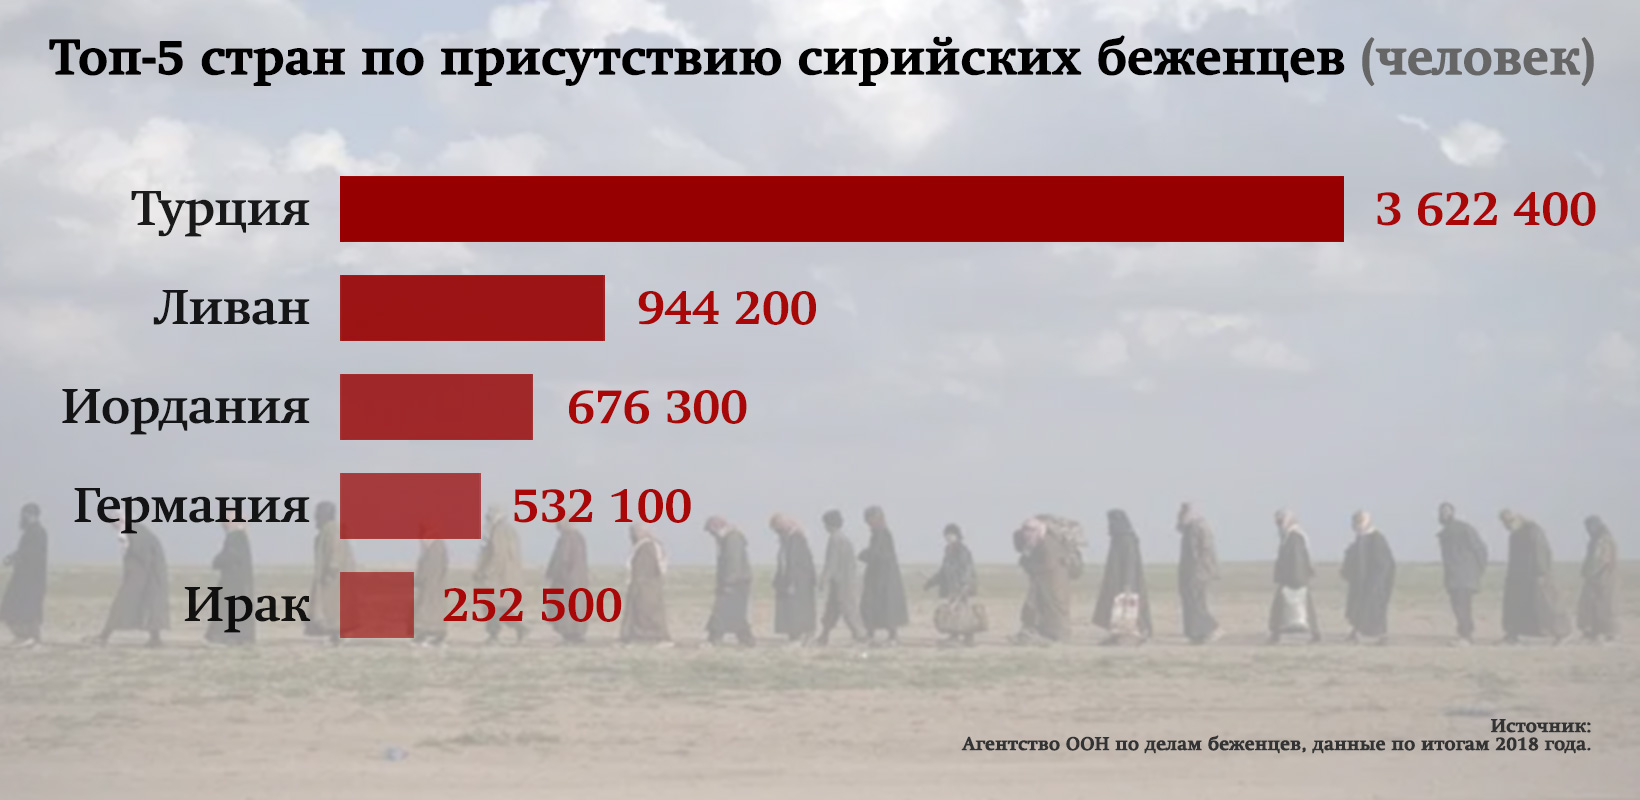 Сколько погибших на данный момент на украине. Число погибших россиян. Сколько россиян погибло в Сирии. Список погибших россиян в Сирии в 2018 году. Сколько российских солдат погибло в Сирии.